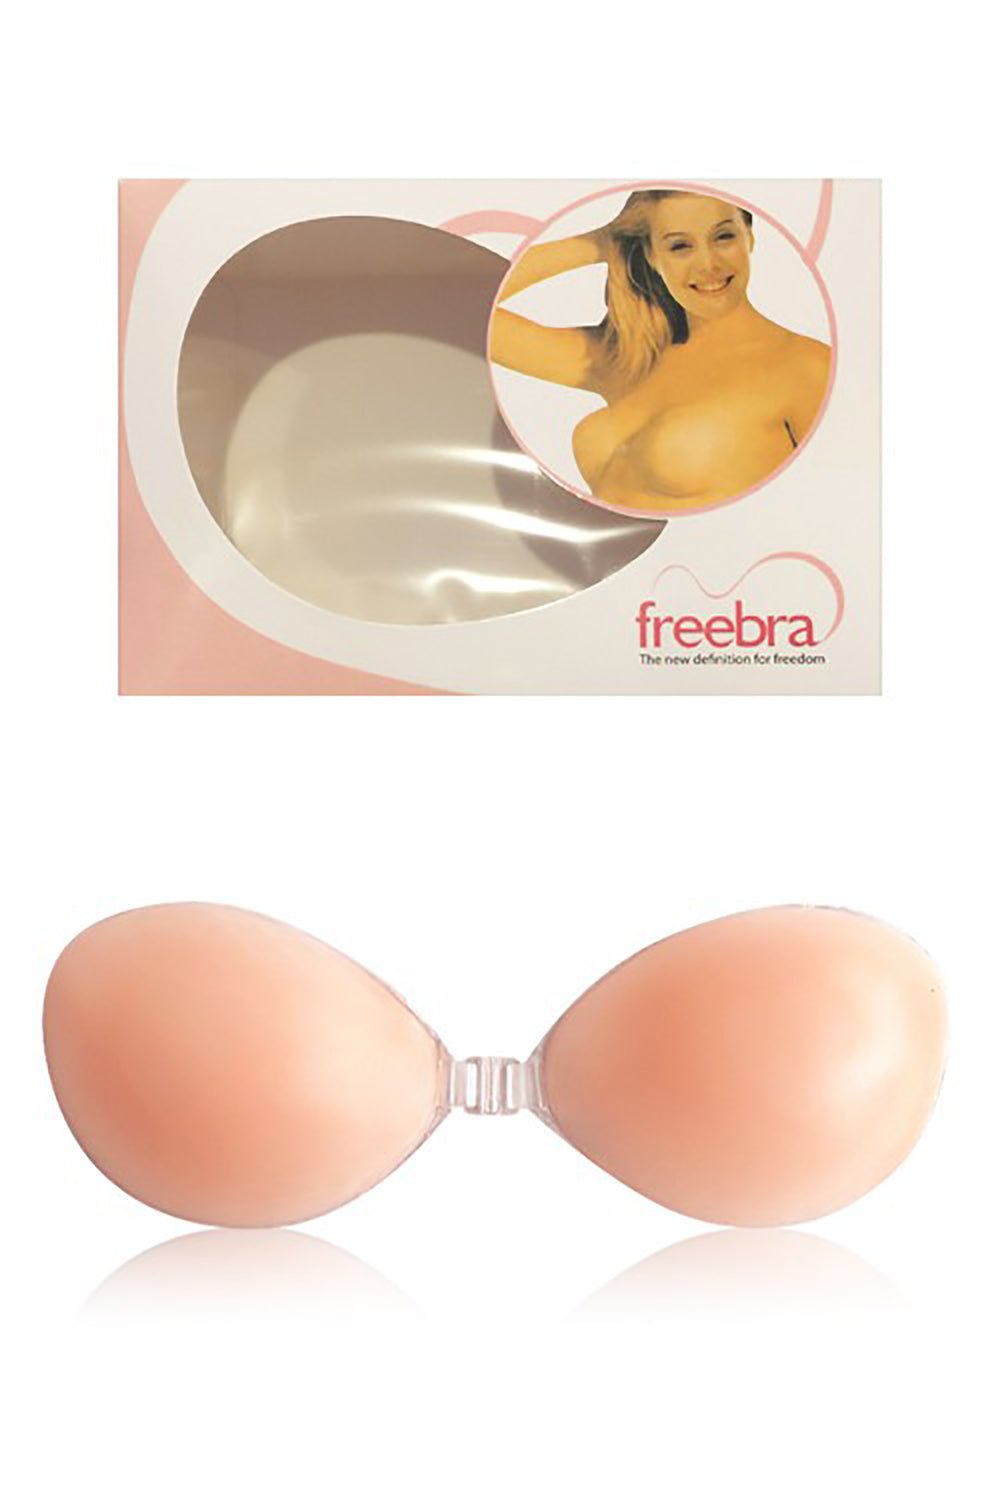 Silicon Free bra